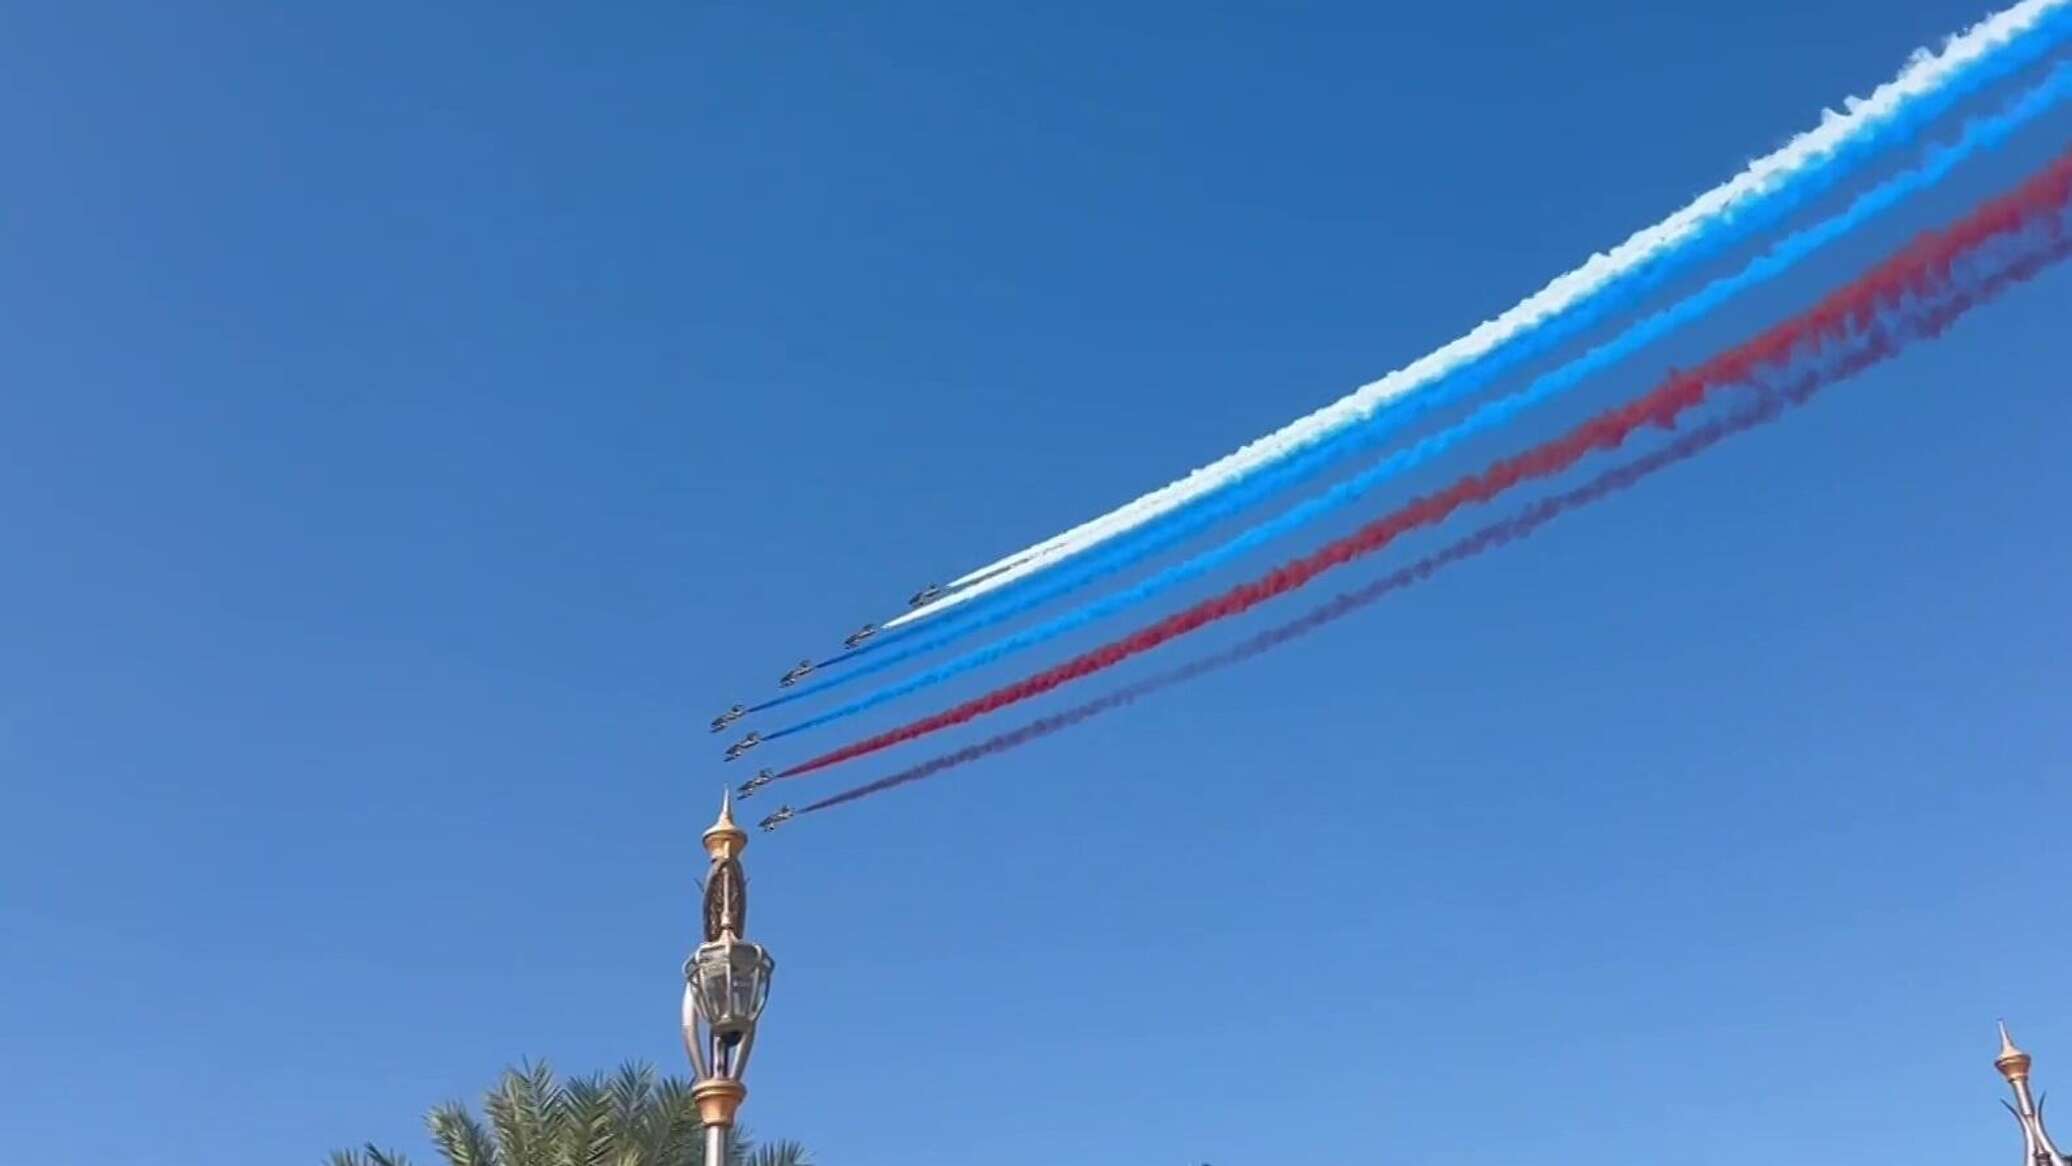 مقاتلات إماراتية ترحب ببوتين برسم علم روسيا في سماء أبو ظبي... فيديو